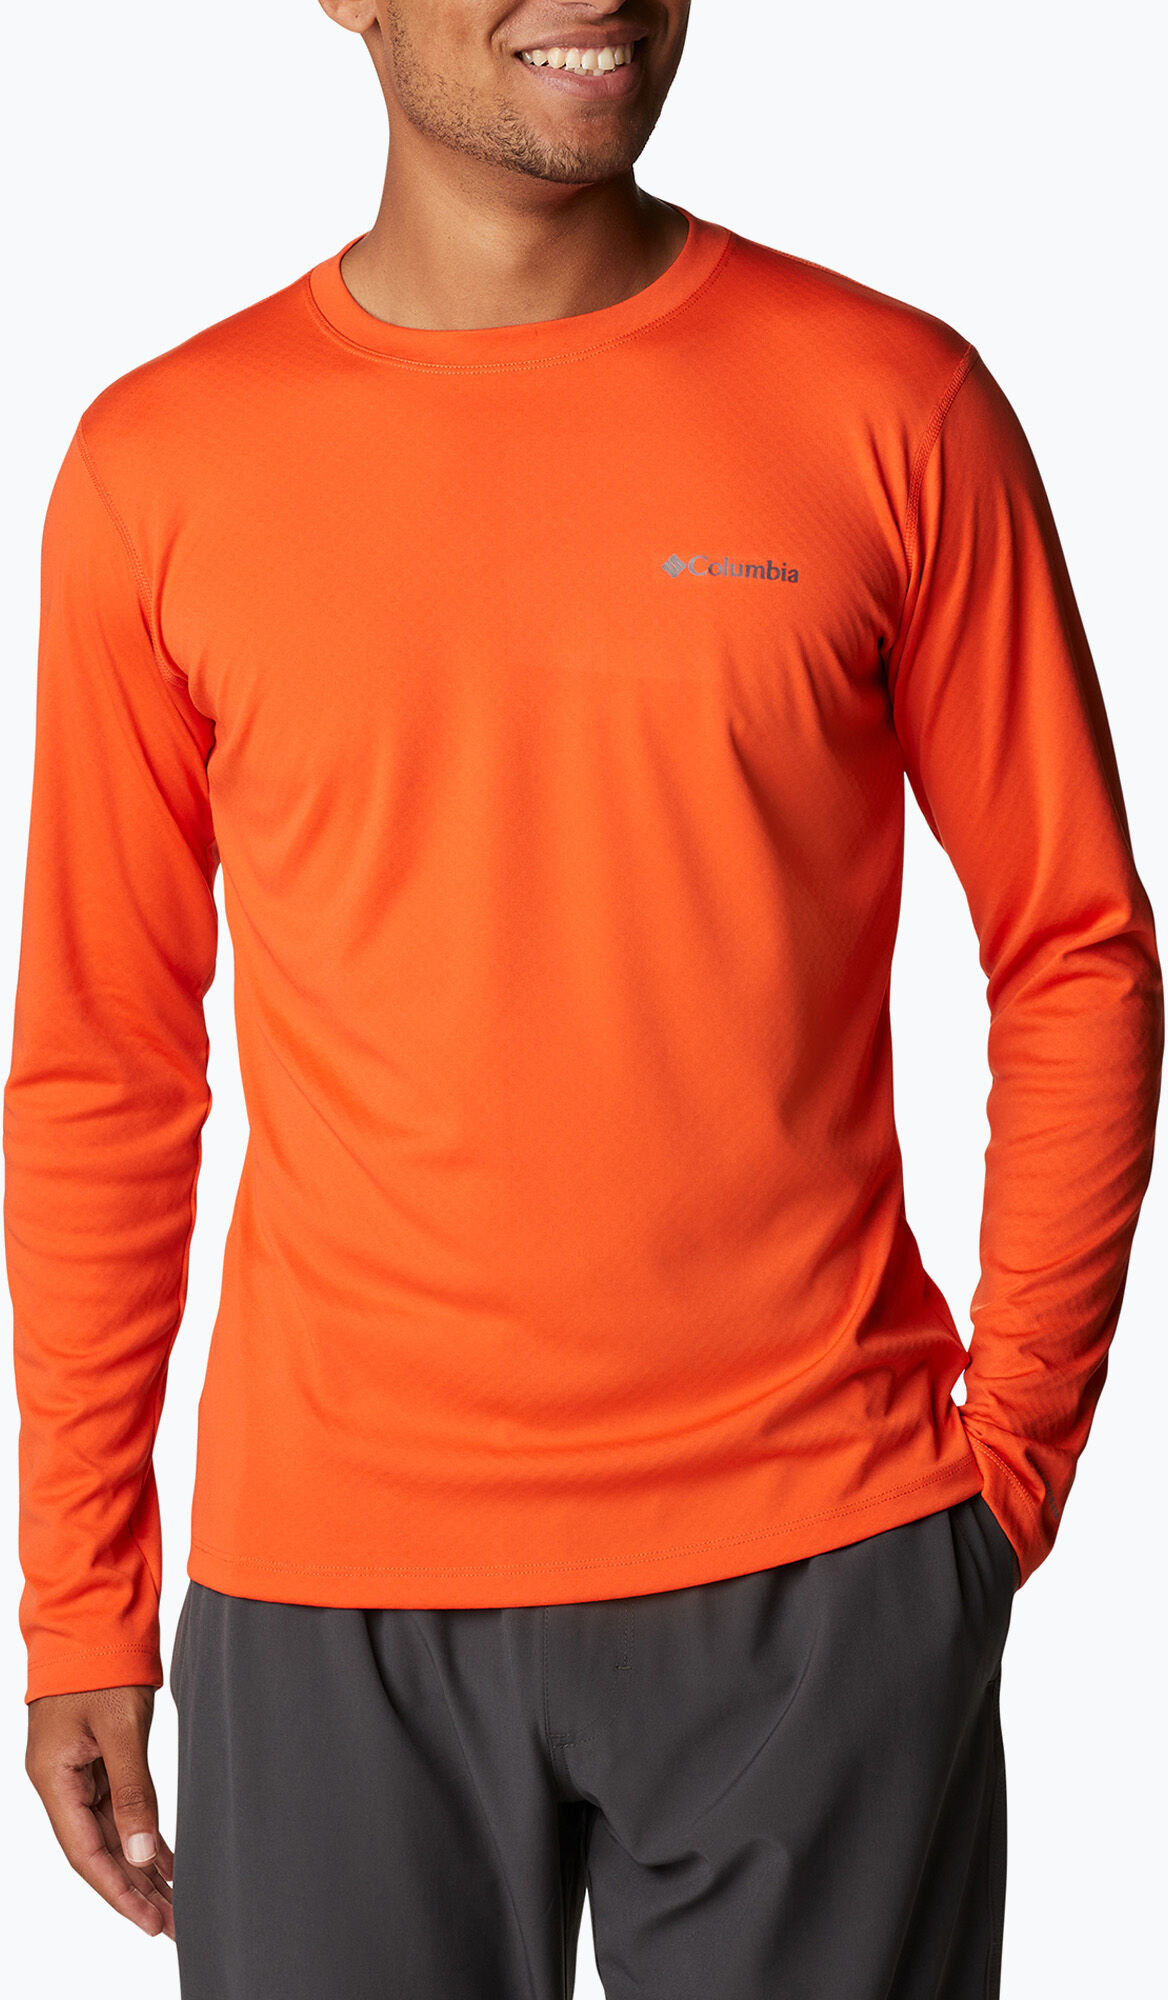 Koszulka trekkingowa męska Columbia Zero Rules pomarańczowa 1533282 WYSYŁKA W 24H 30 DNI NA ZWROT